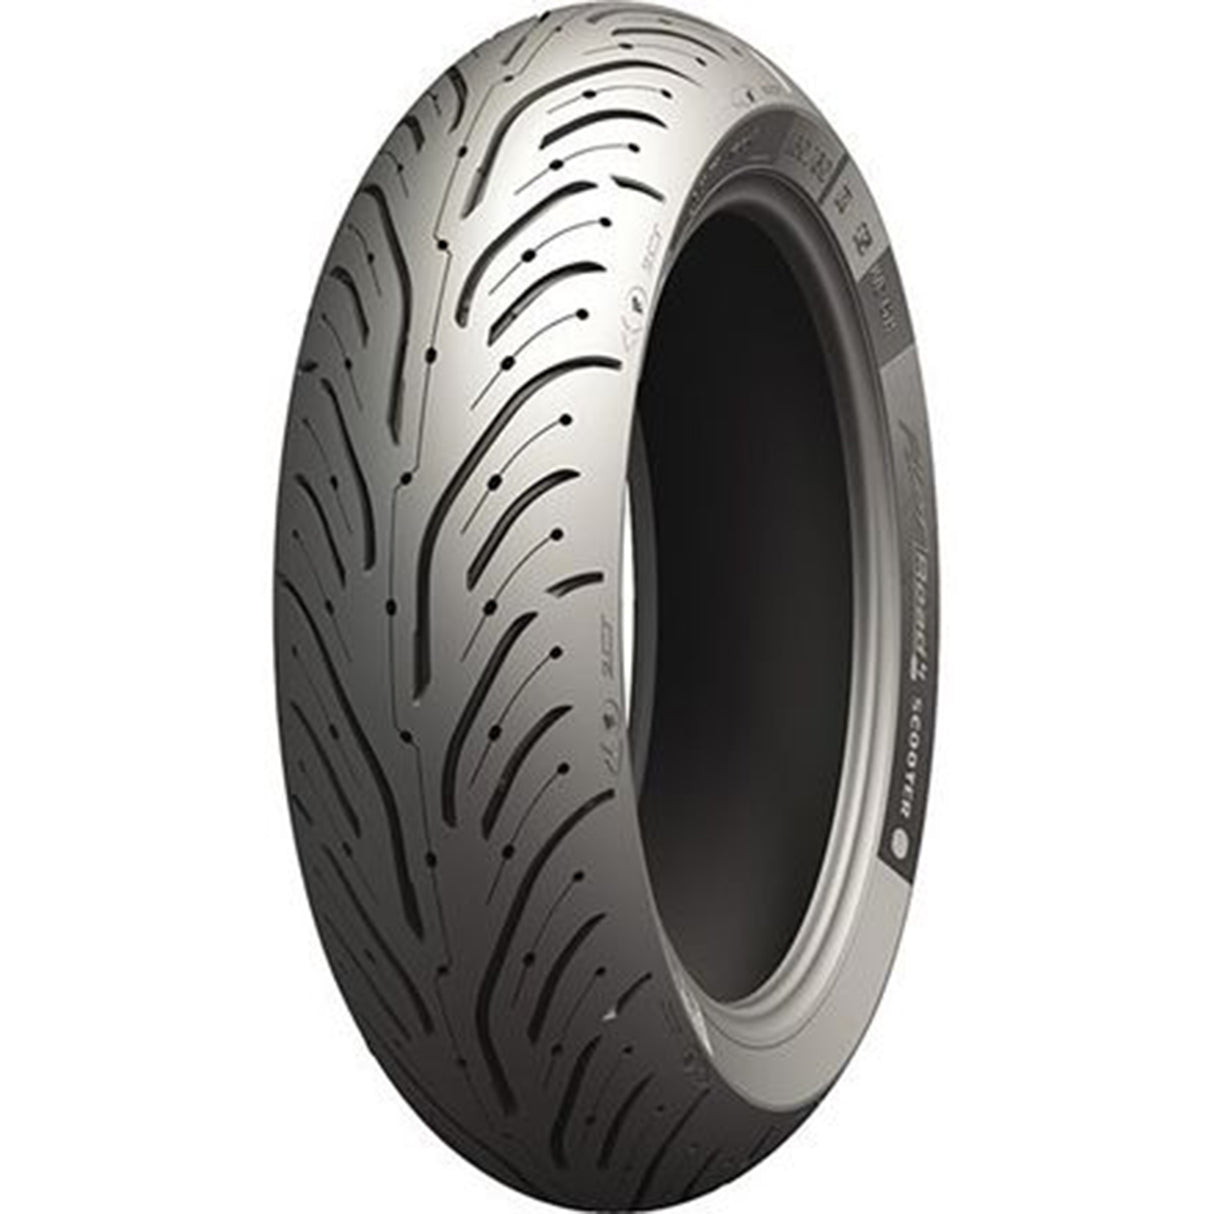 Michelin Pilot Road 4 GT 190/55 ZR 17 73W TL Rear Tyre